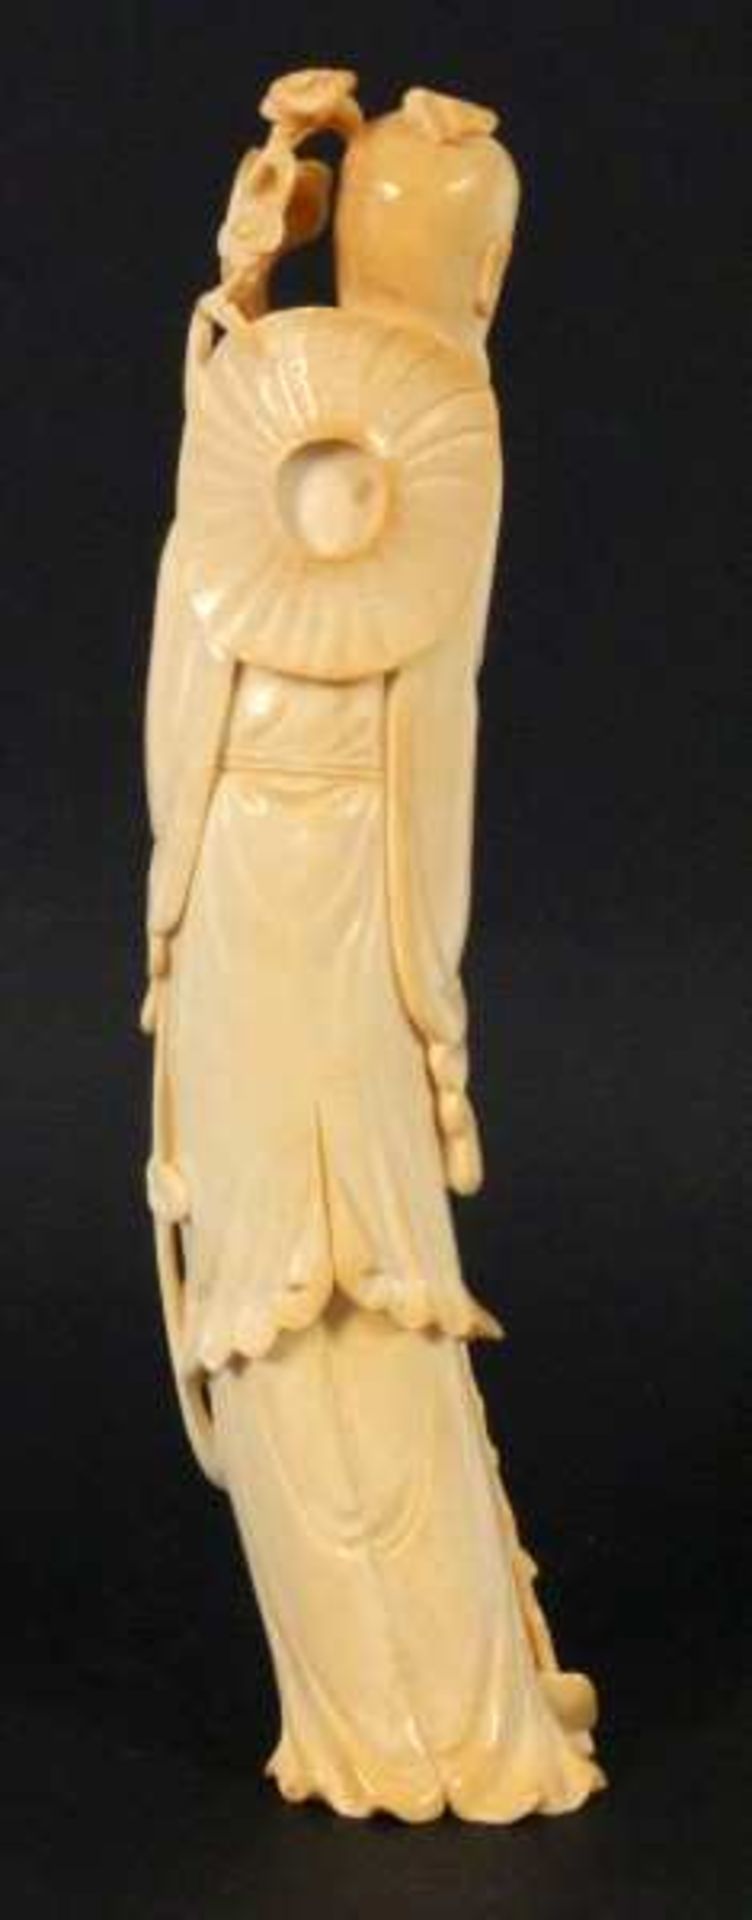 CHINESISCHER PILGER China um 1900 Geschnitzte Elfenbeinfigur eines bärtigen Mannes mit Pilgerstab - Bild 2 aus 3